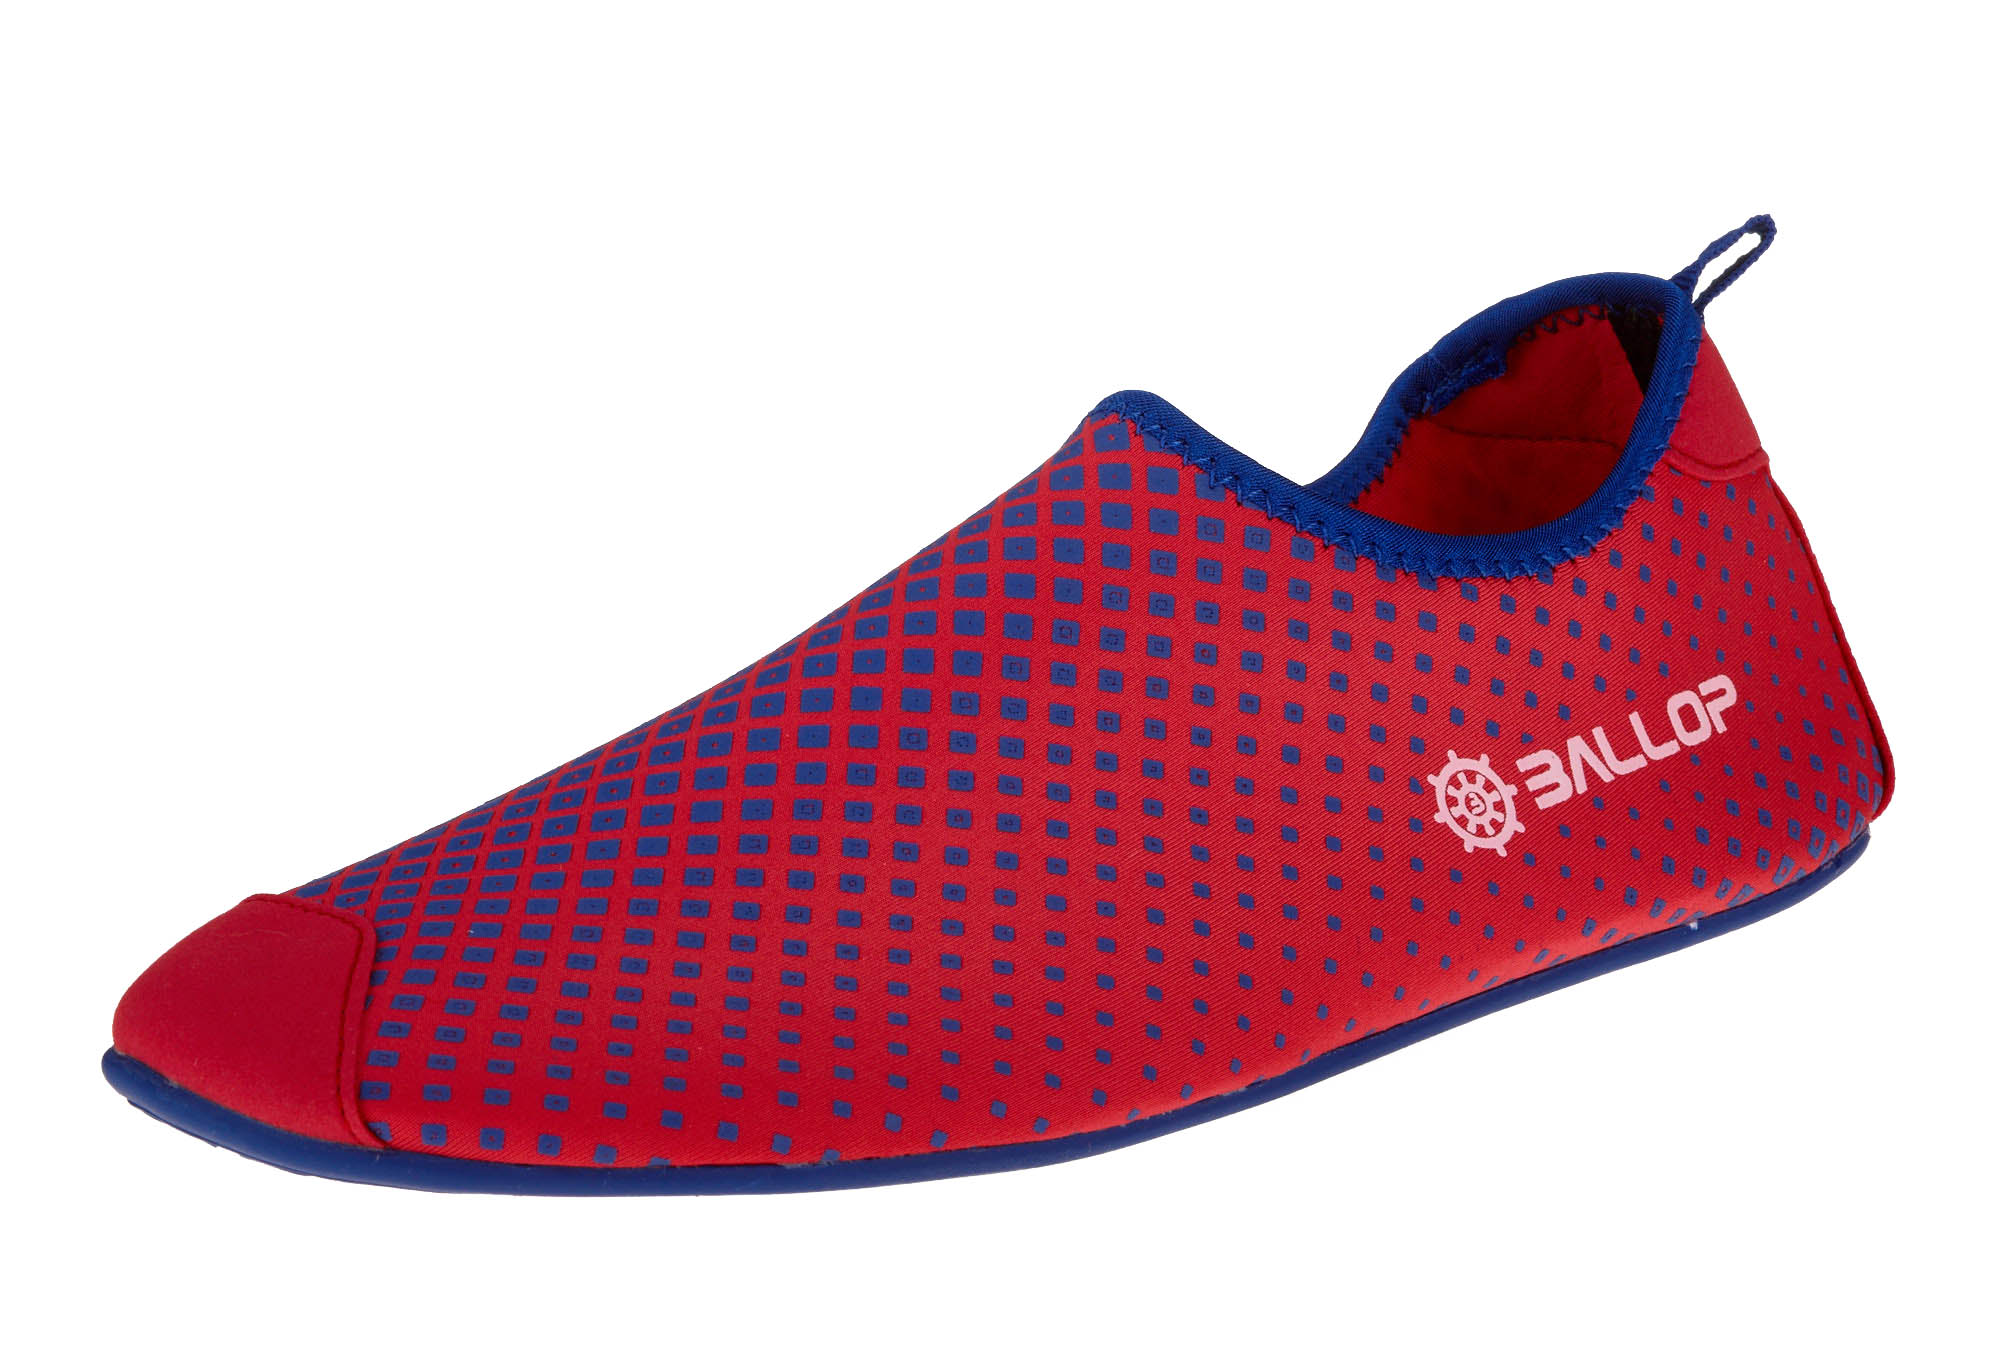 BALLOP- Schuhe "Aqua Fit Typhoon red" Barfußschuh Spandex. Größen: 37,5-47 